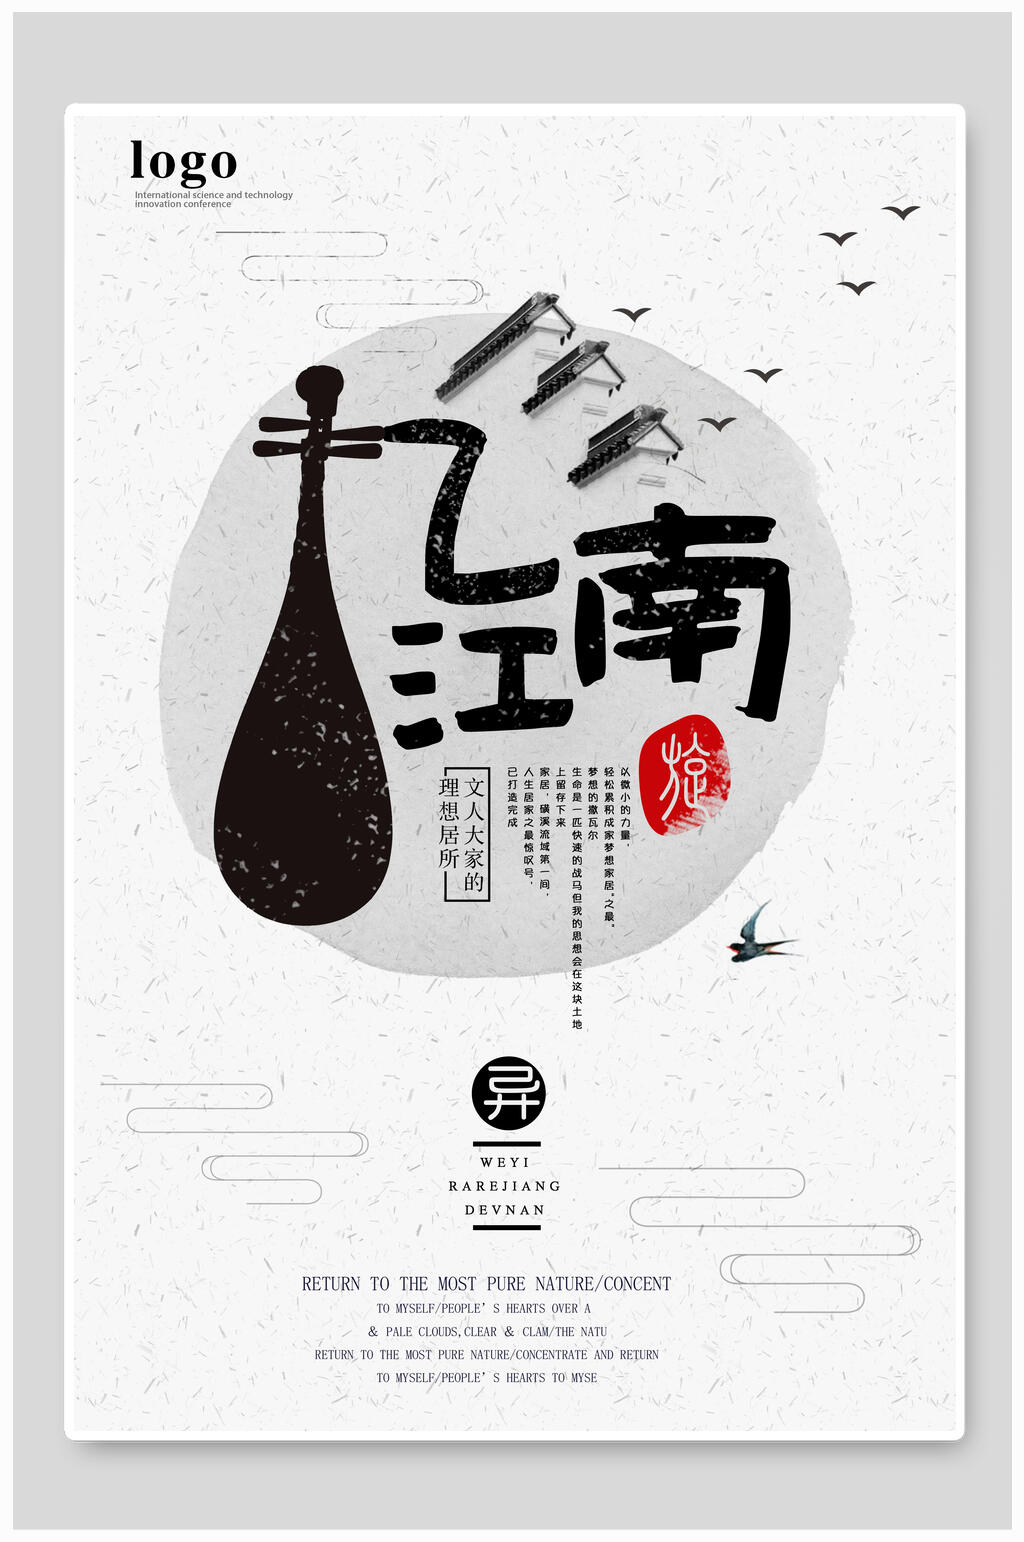 众图网独家提供古风忆江南海报设计素材免费下载,本作品是由小红1210